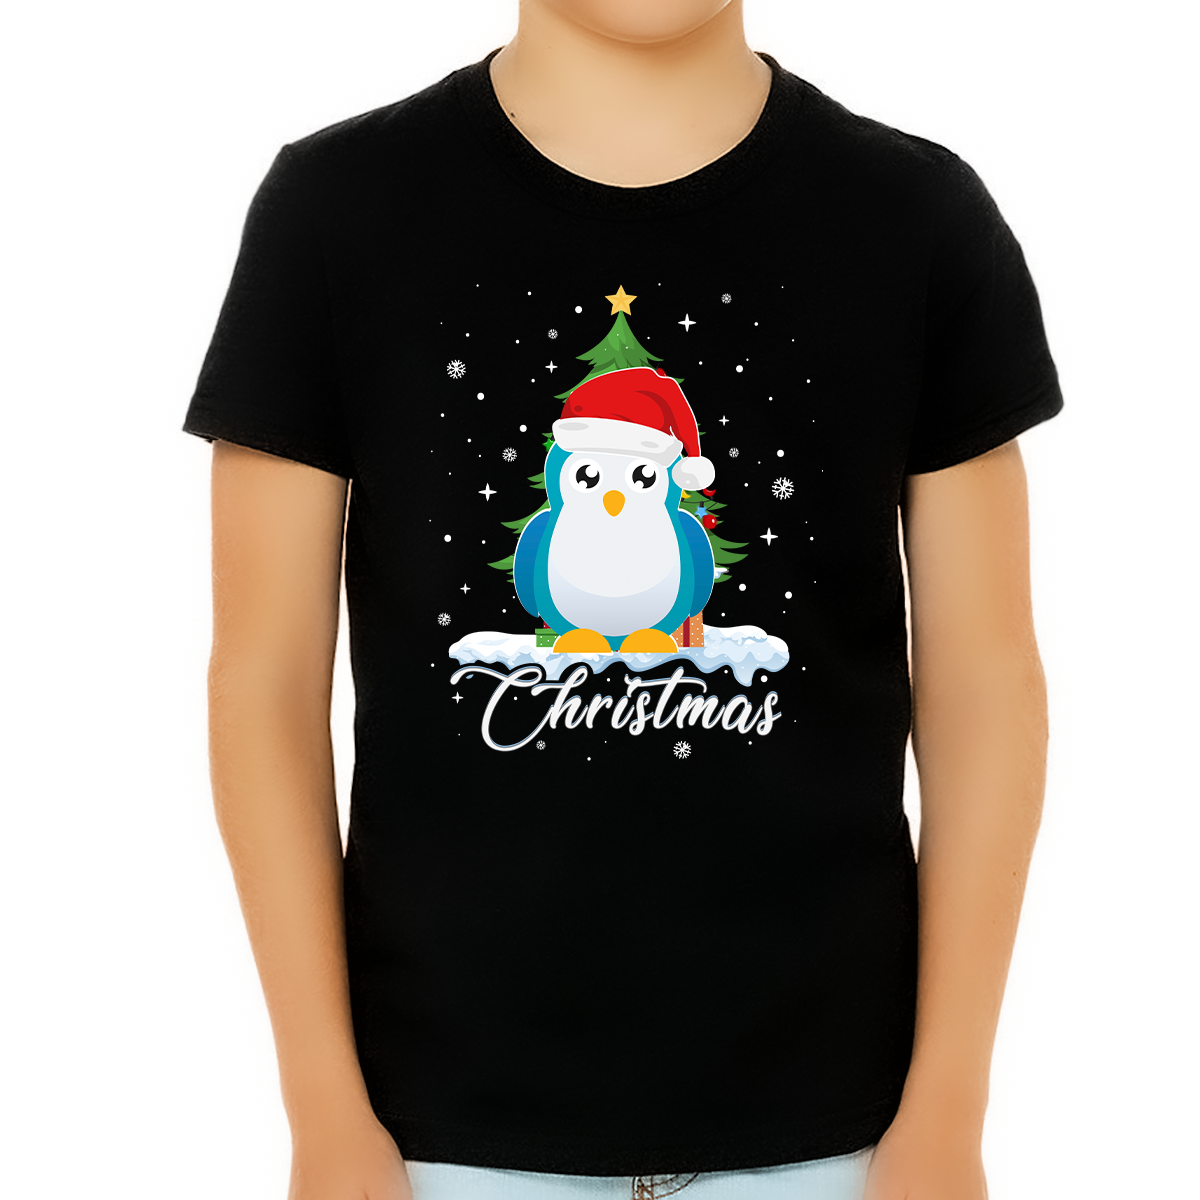 Boys Christmas Shirt Penguin Christmas Shirts for Boys Christmas Shirt Christmas Shirts for Kids